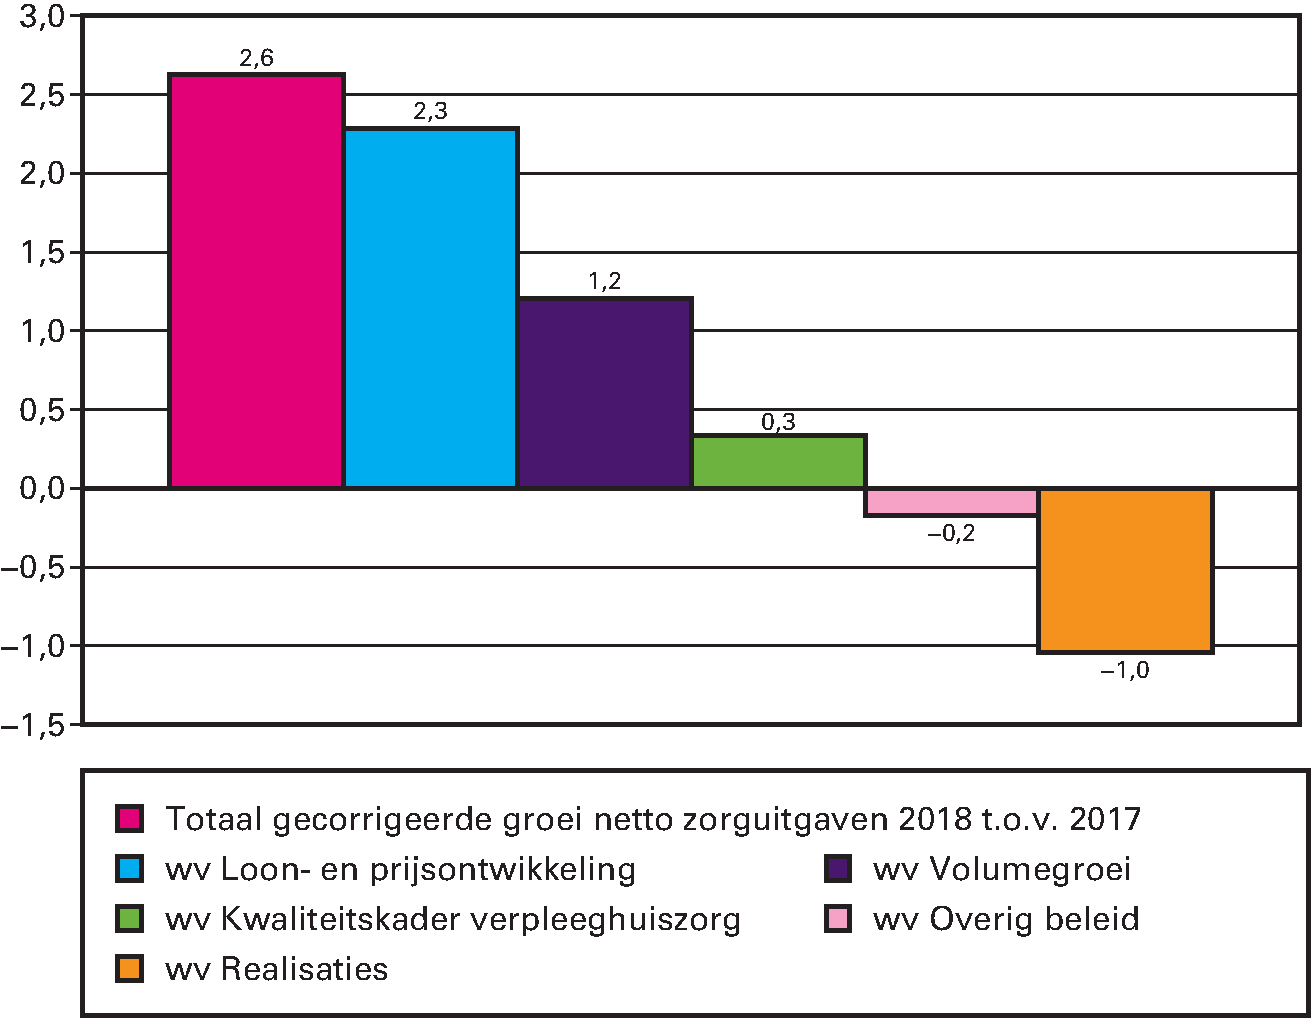 Figuur 1 Opbouw groei van de gecorrigeerde netto zorguitgaven 2018 t.o.v. 2017 in miljarden euro’s